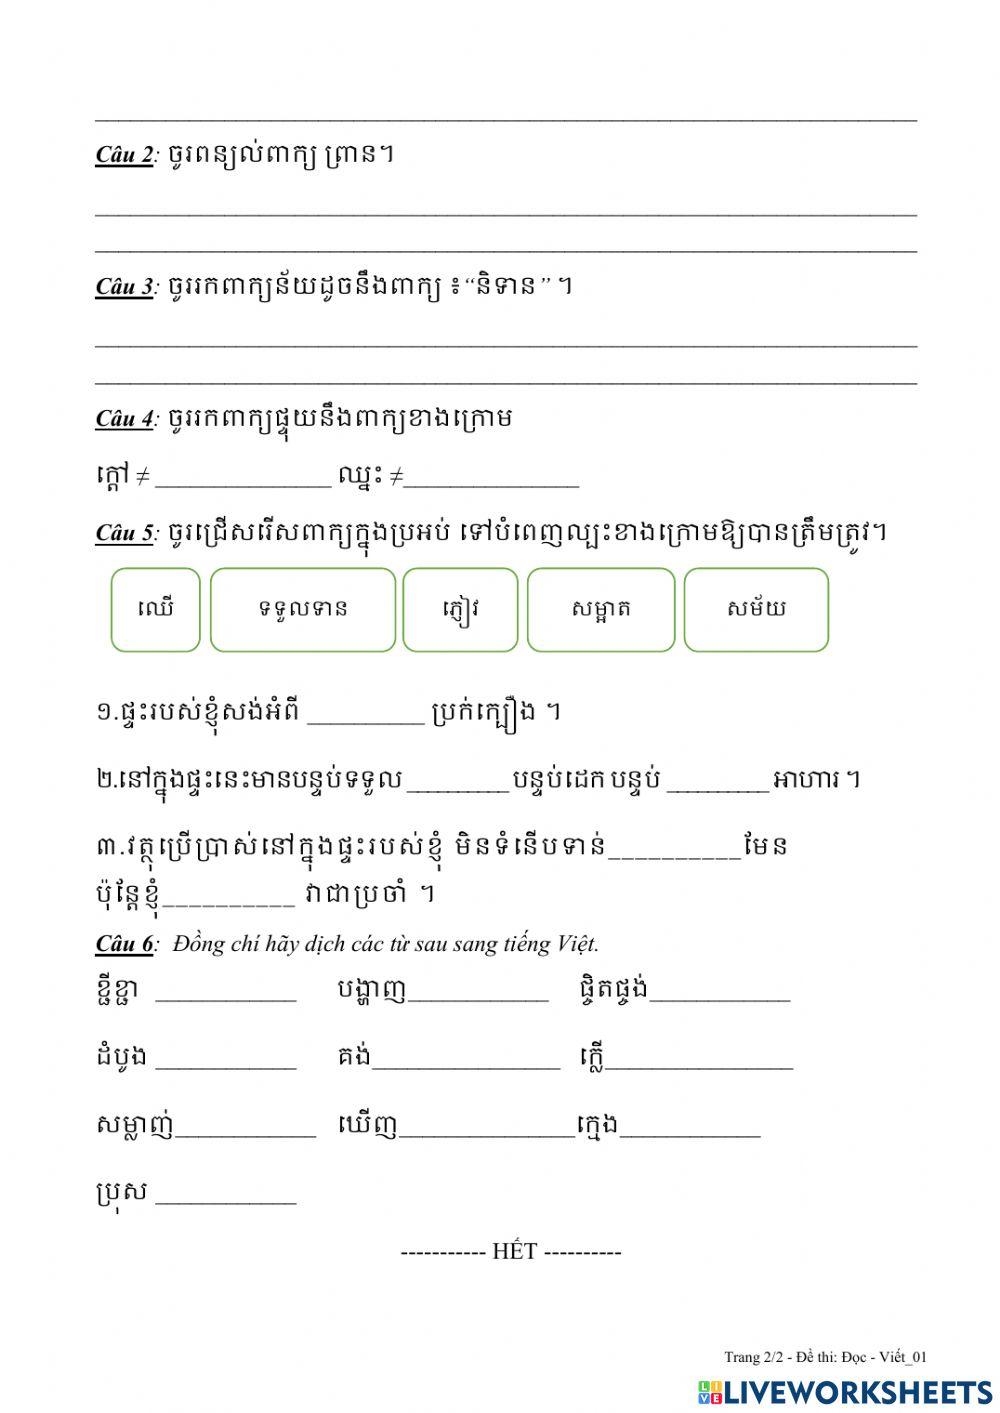 Đọc - viết tiếng Khmer